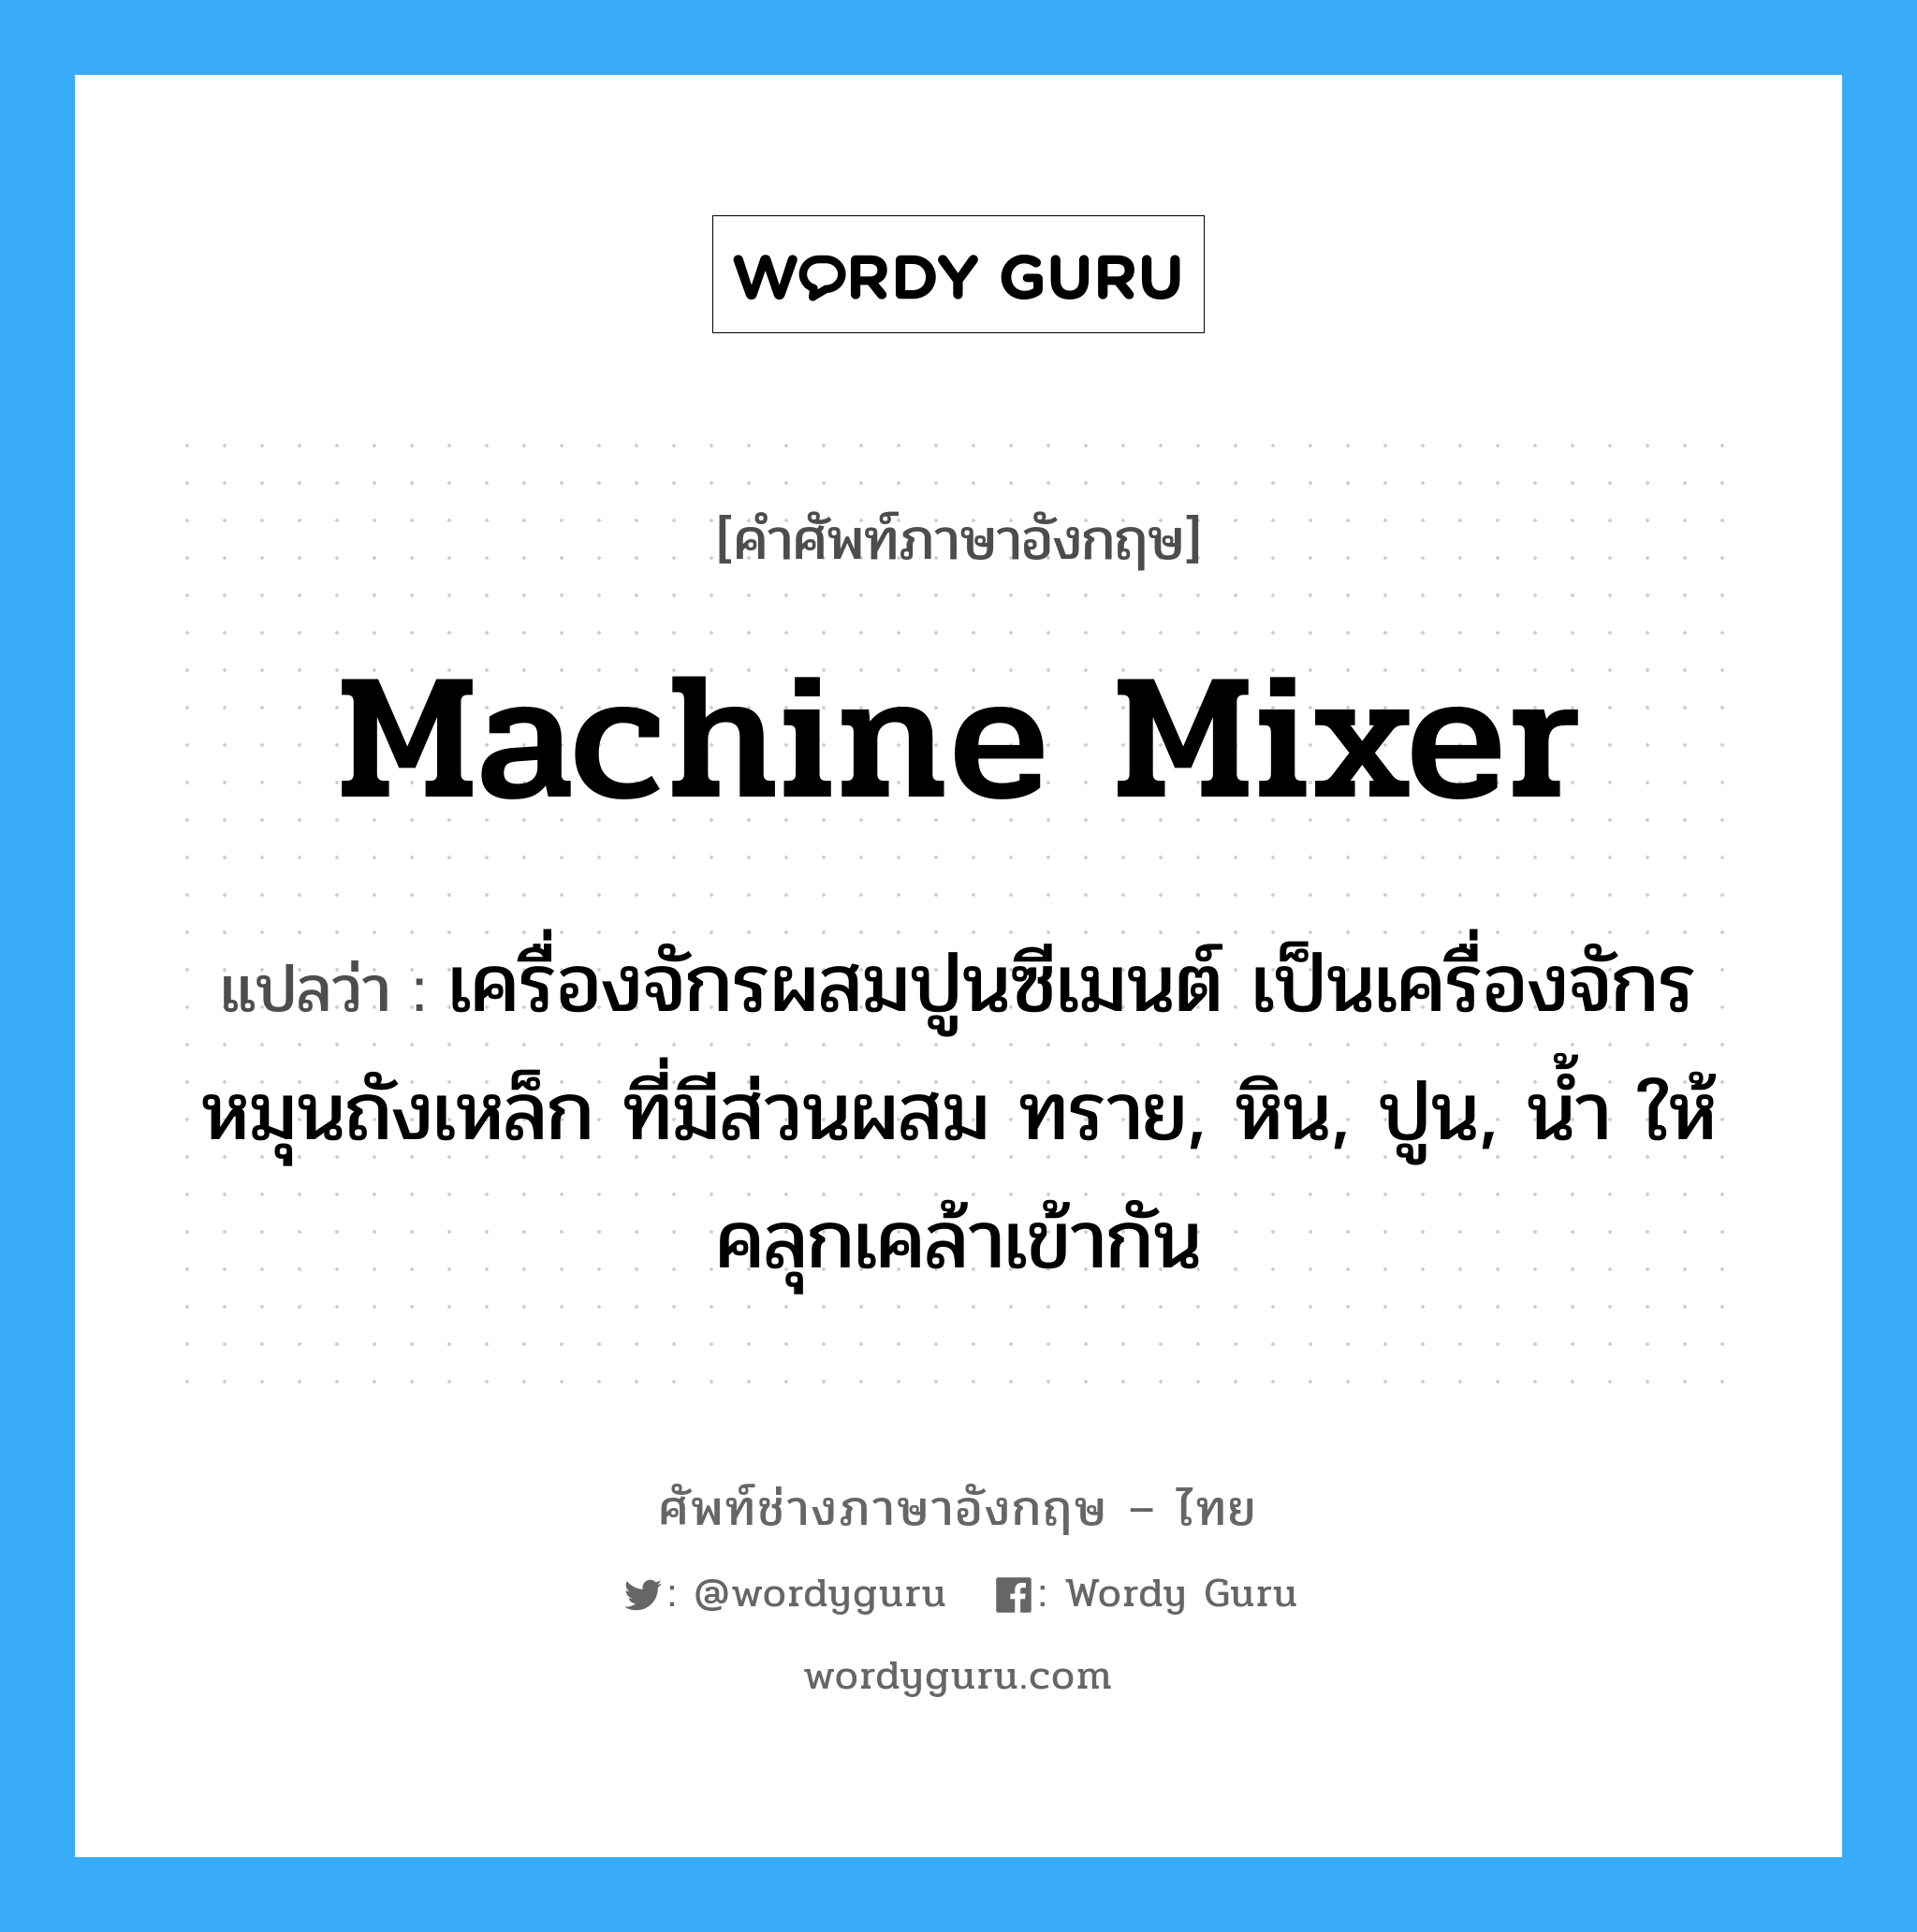 machine Mixer แปลว่า?, คำศัพท์ช่างภาษาอังกฤษ - ไทย machine Mixer คำศัพท์ภาษาอังกฤษ machine Mixer แปลว่า เครื่องจักรผสมปูนซีเมนต์ เป็นเครื่องจักรหมุนถังเหล็ก ที่มีส่วนผสม ทราย, หิน, ปูน, น้ำ ให้คลุกเคล้าเข้ากัน